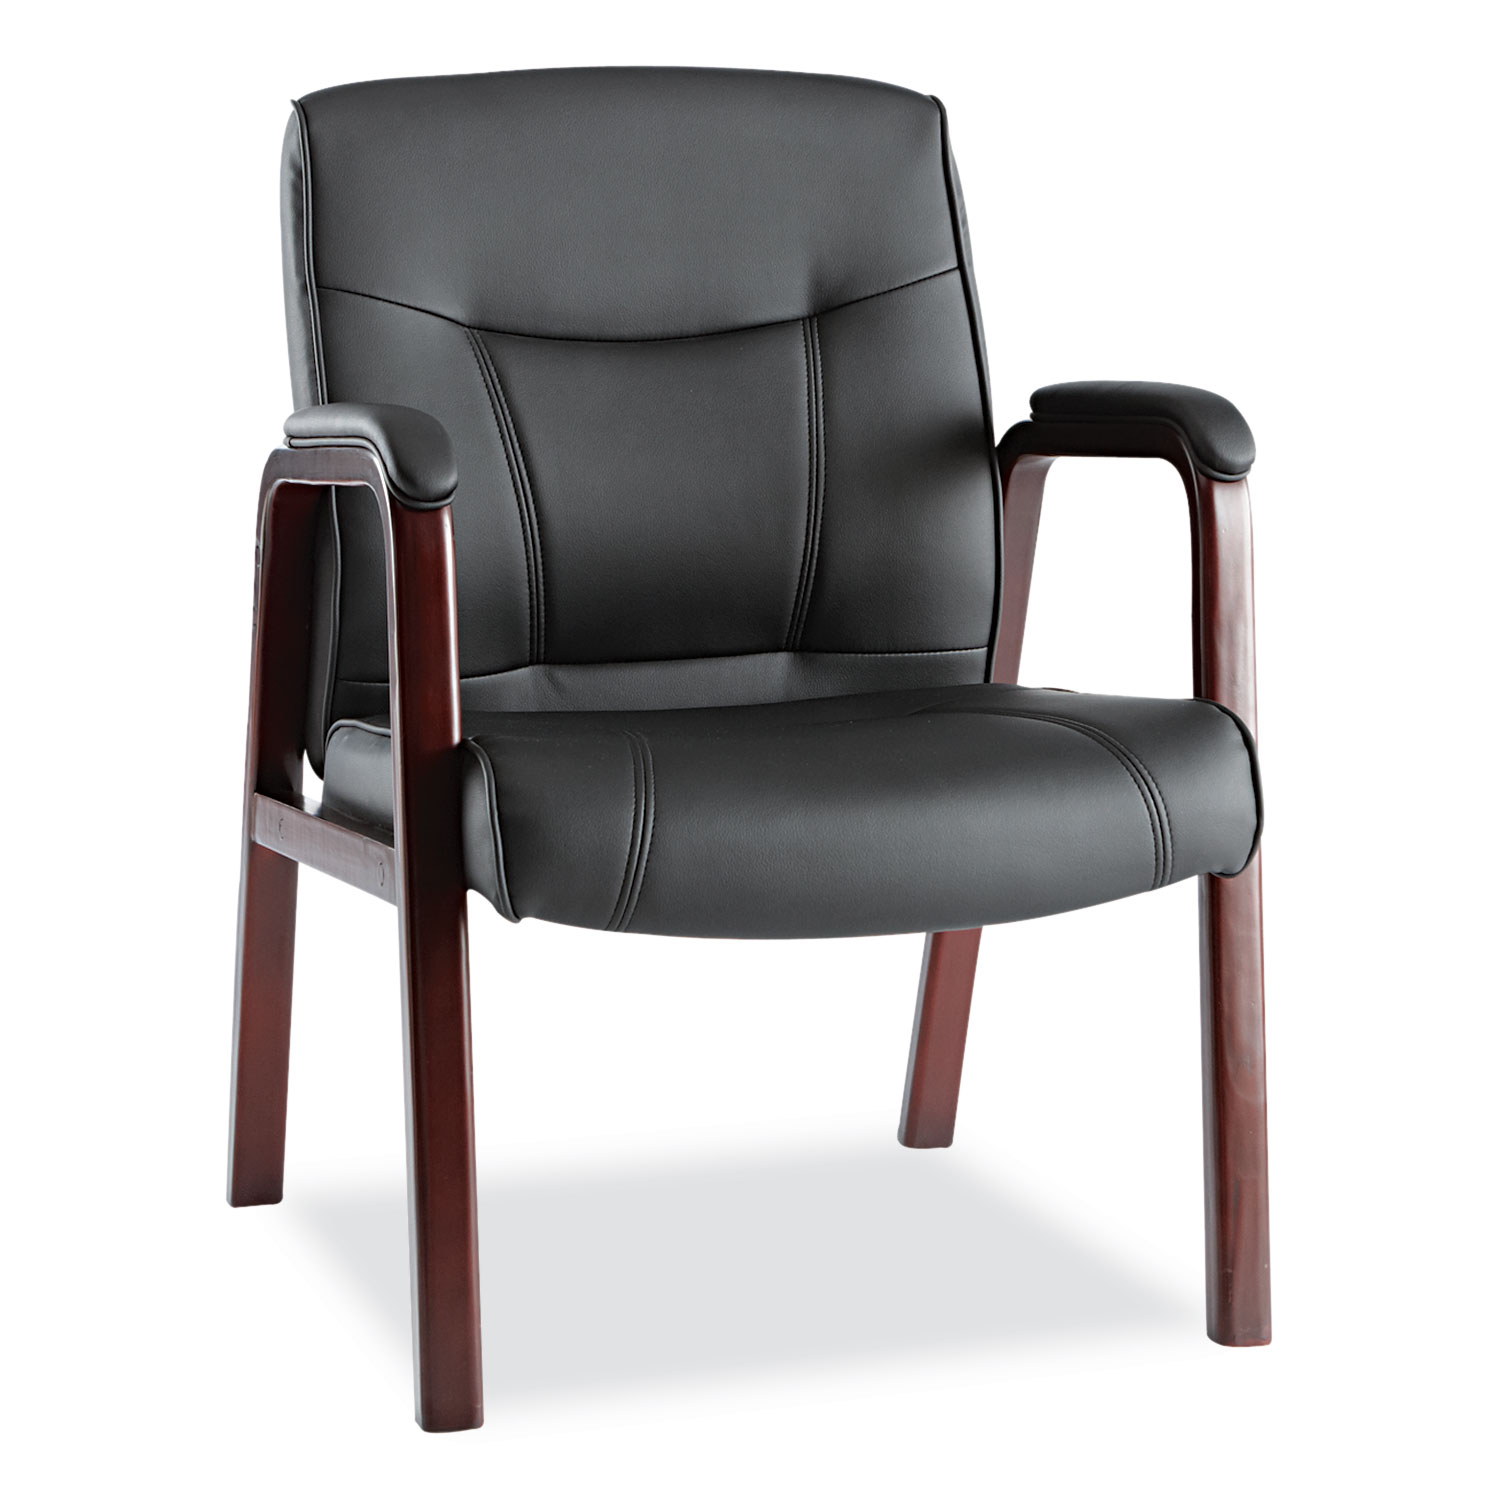  Alera ALEMA43ALS10M Alera Madaris Series Leather Guest Chair with Wood Trim Legs, 24.88 x 26 x 35, Black Seat/Black Back, Mahogany Base (ALEMA43ALS10M) 